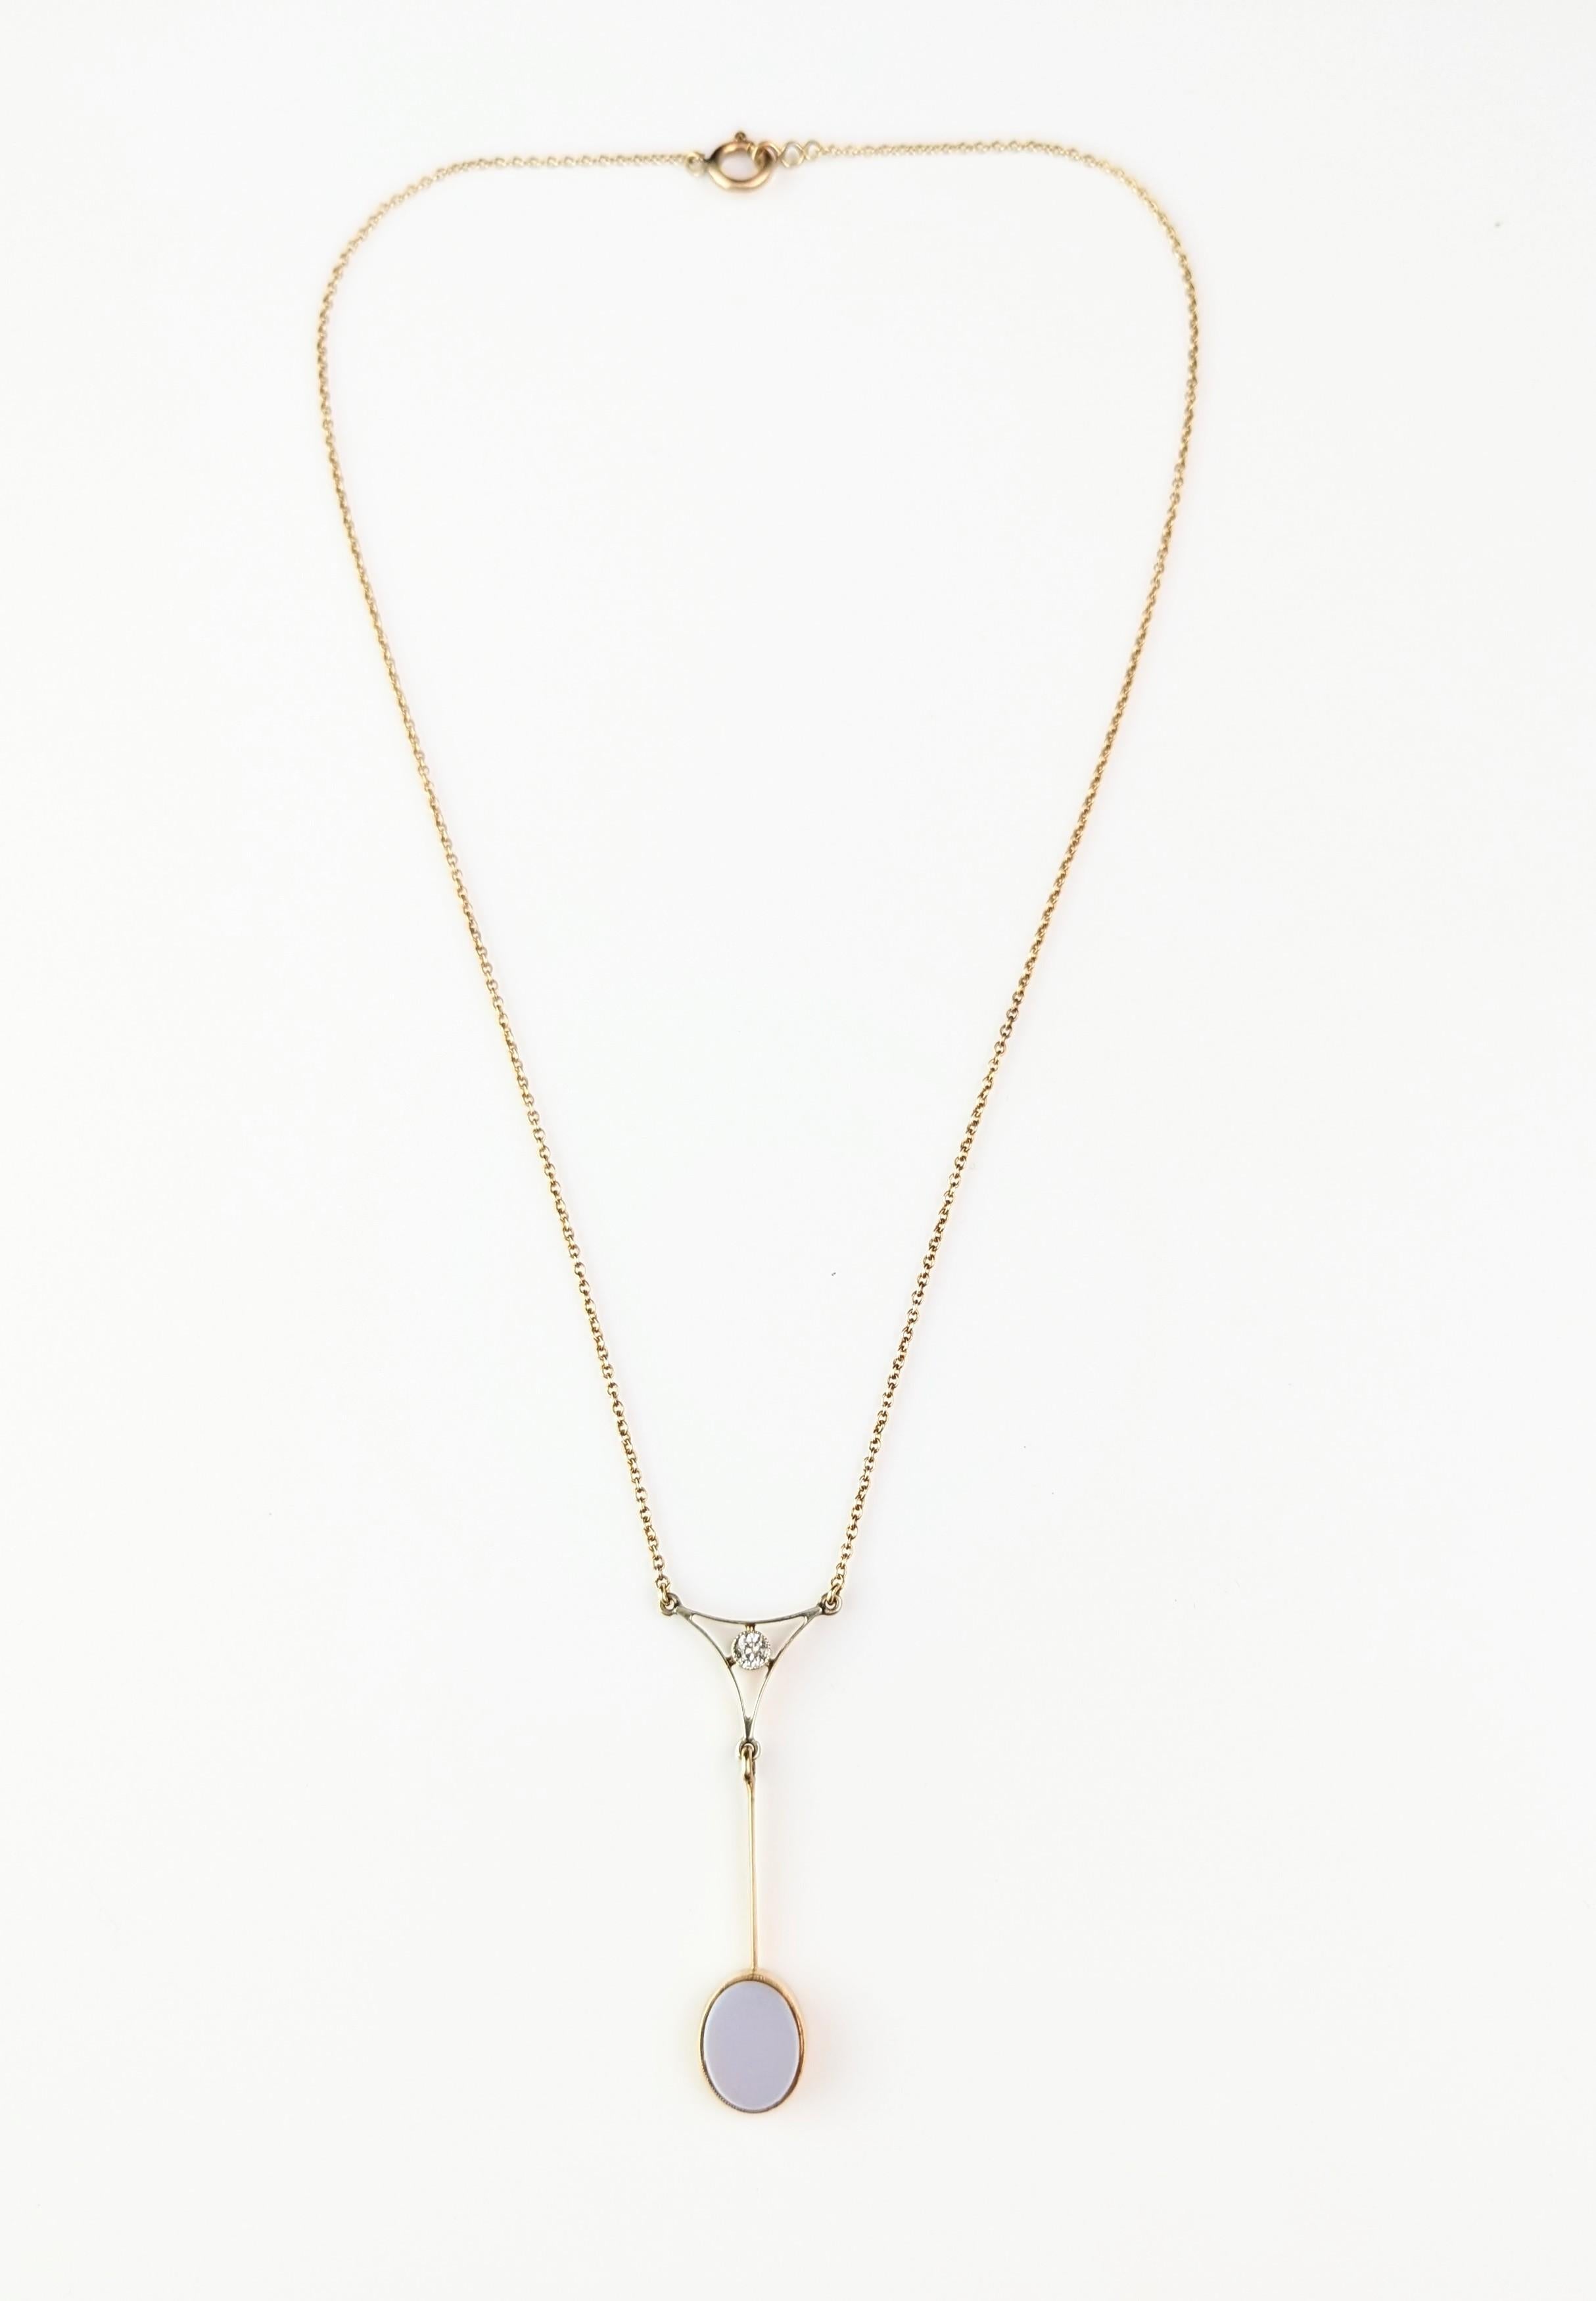 Antique Art Deco drop pendant necklace, Diamond and Sardonyx, 9kt gold  For Sale 7